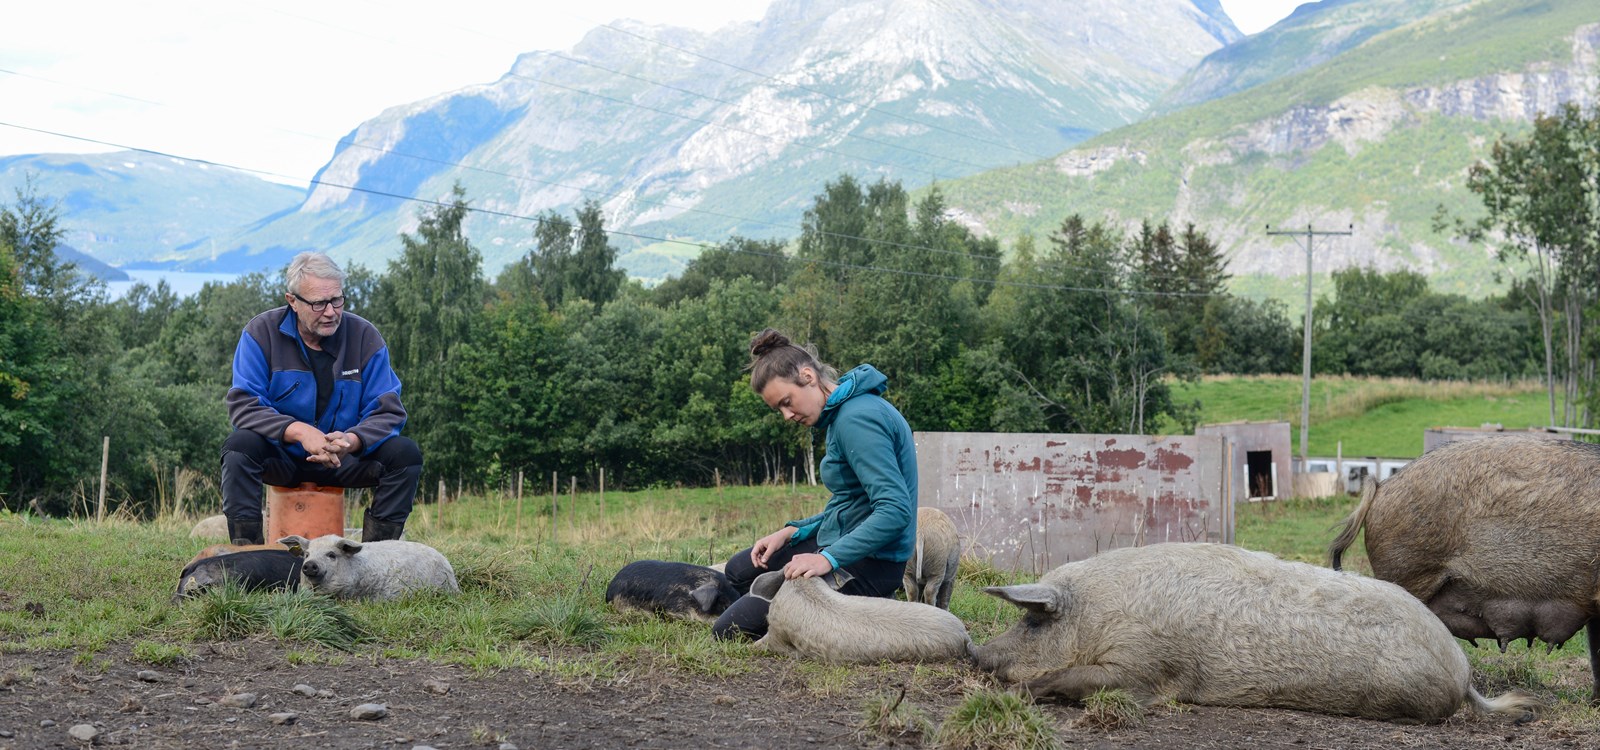 Nertrst fjellgard driv økologisk med kjøtproduksjon og har utvida med ullgris denne sommaren. Også «Utegris fra Vang» og «Syndingris» sel svinekjøt direkte.